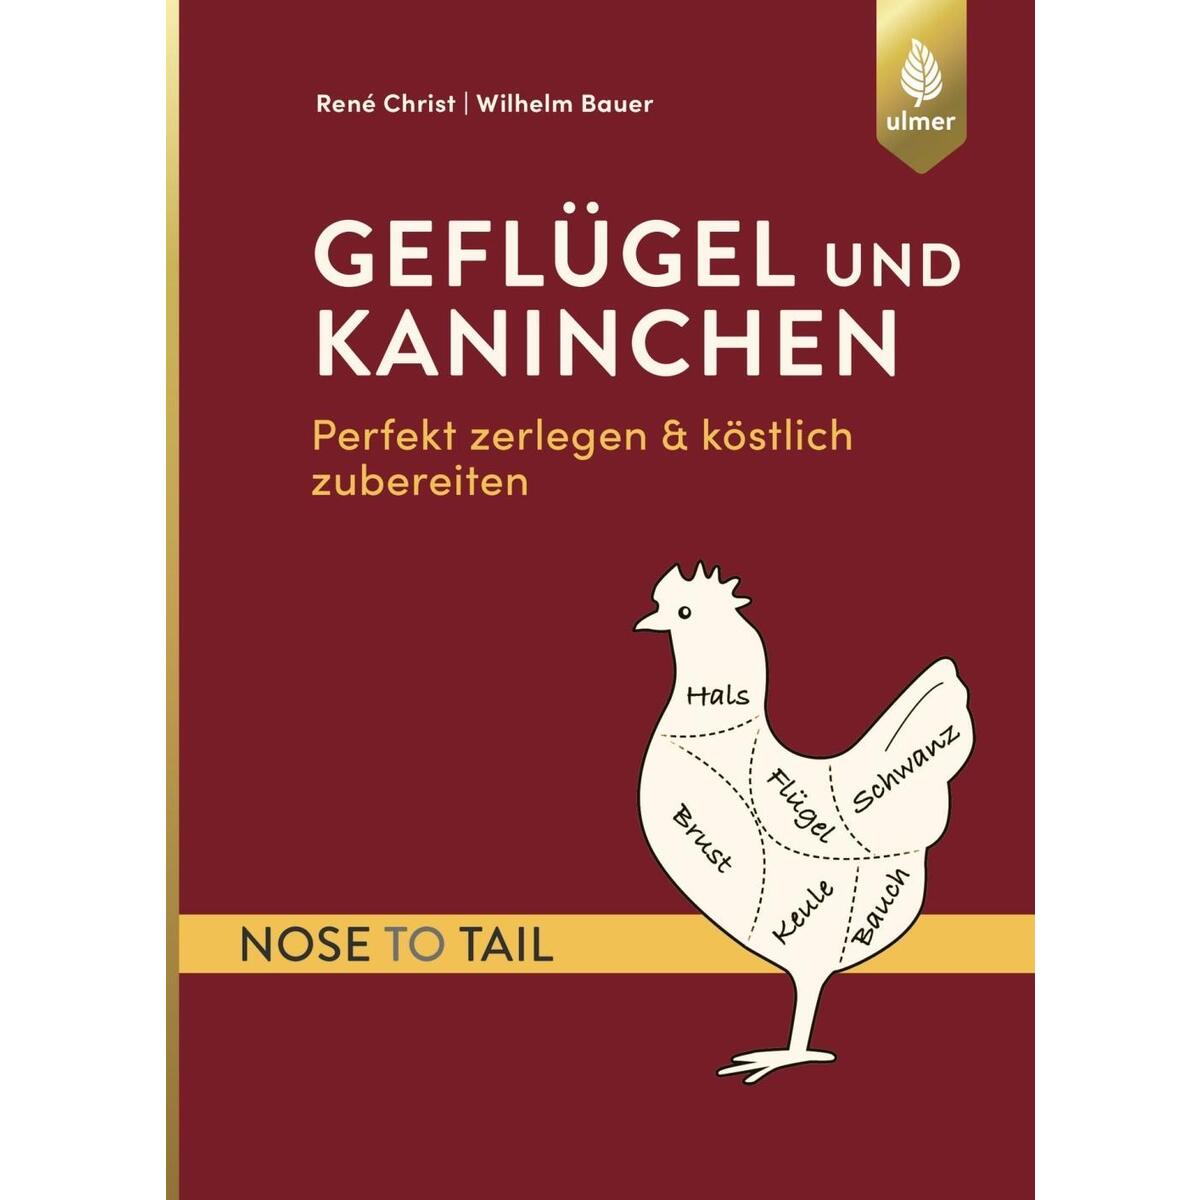 Geflügel und Kaninchen - nose to tail von Ulmer Eugen Verlag